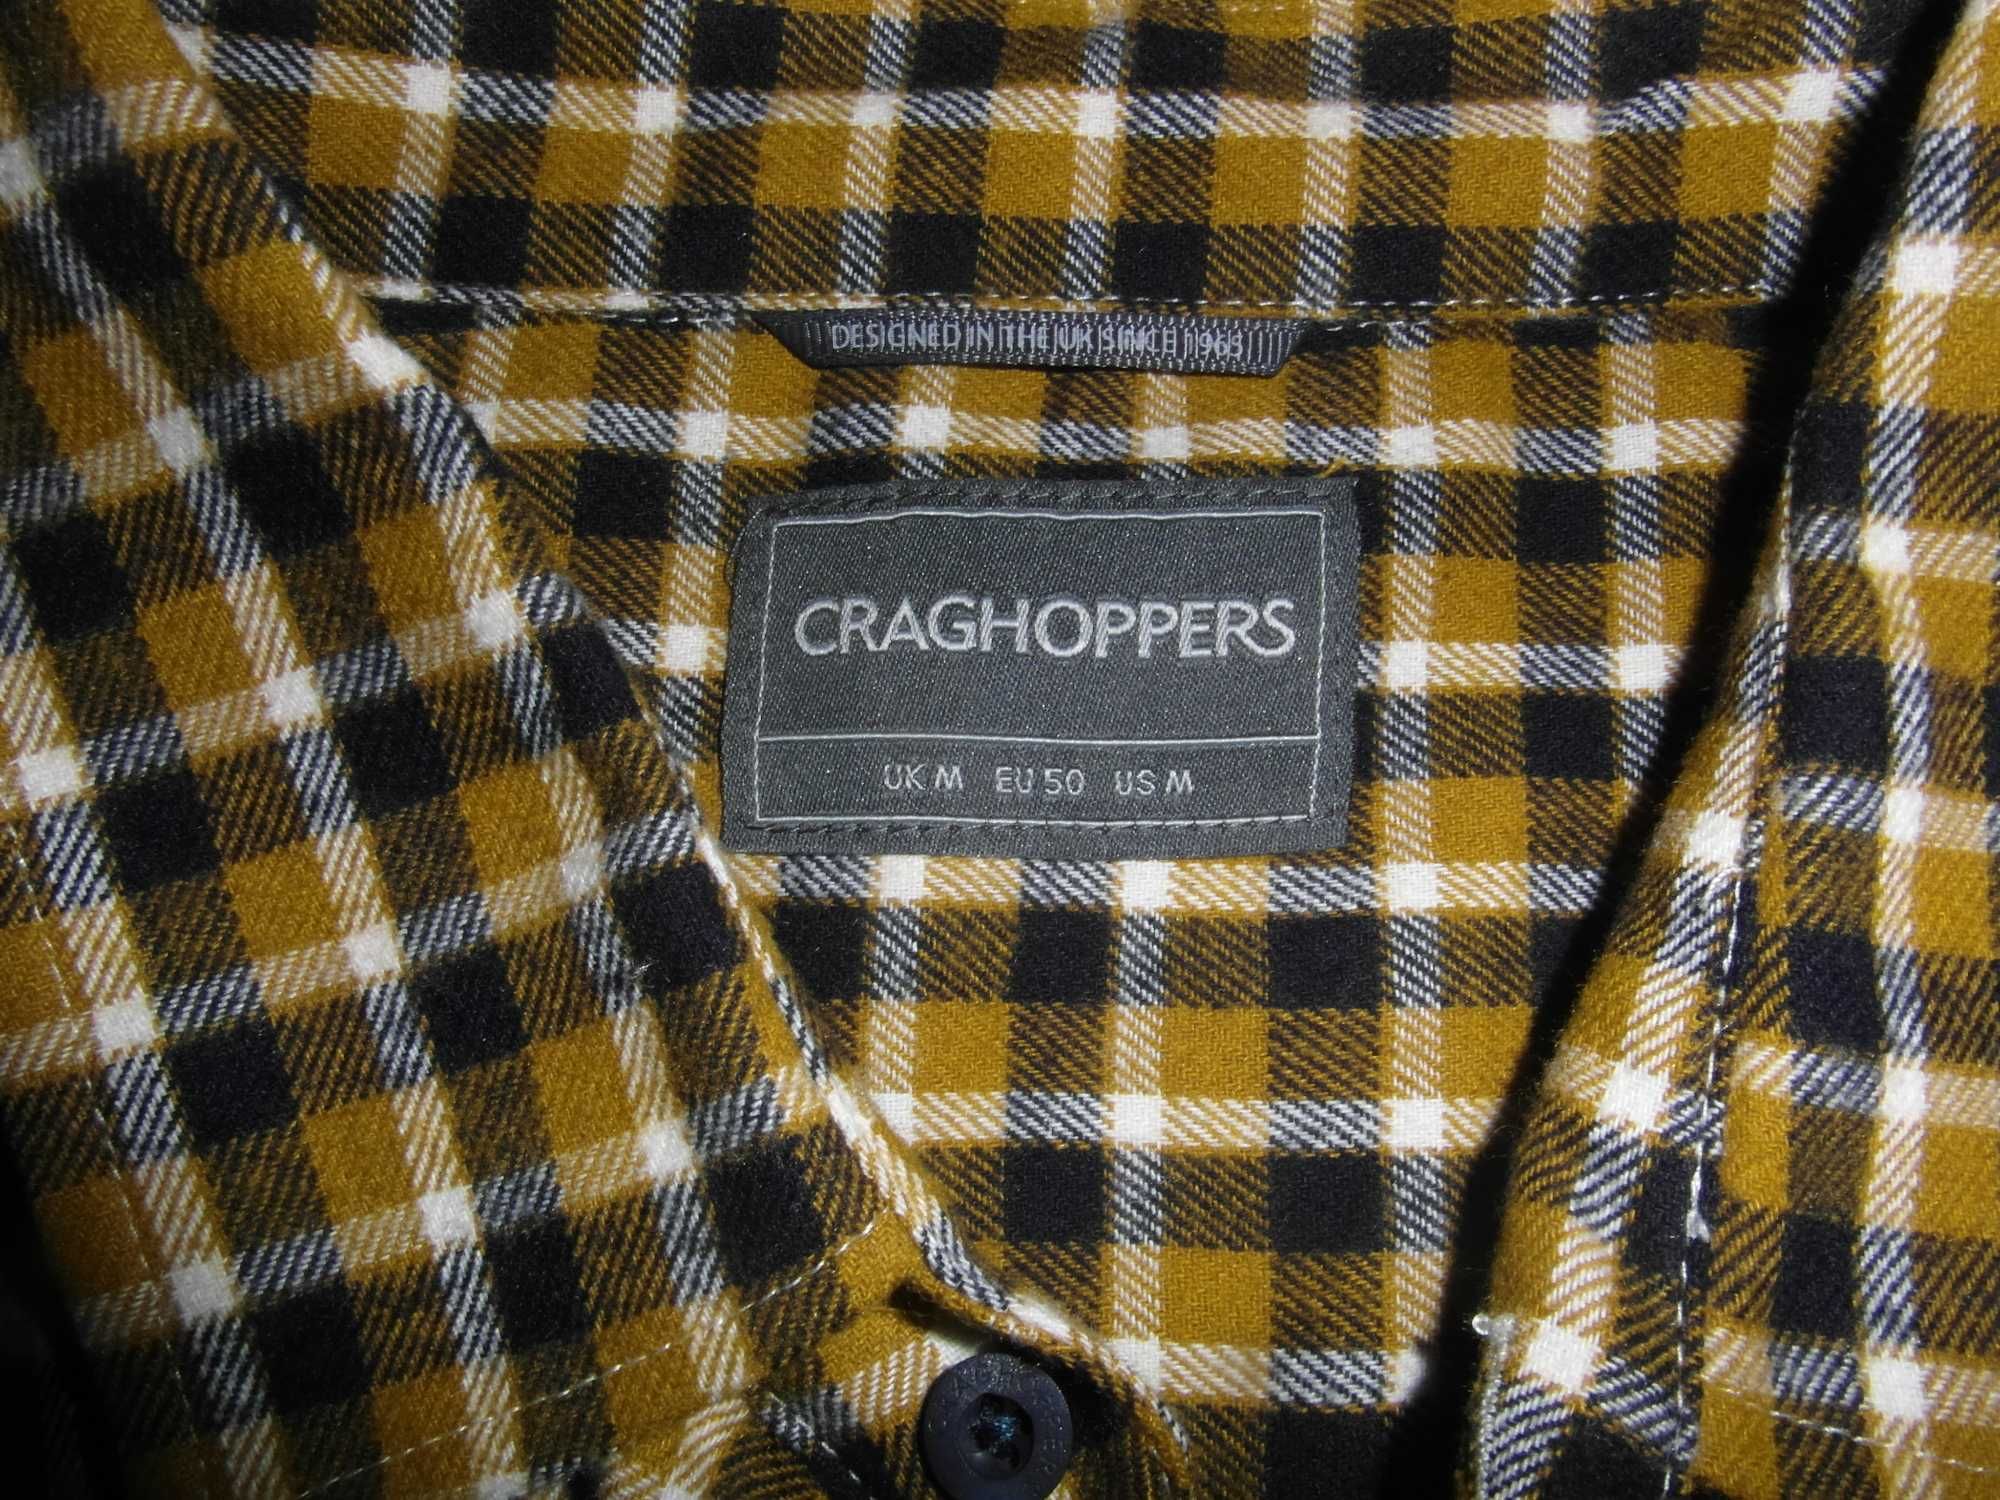 Męska koszula craghoppers Kiwi Long Sleeve check; rozmiar M;